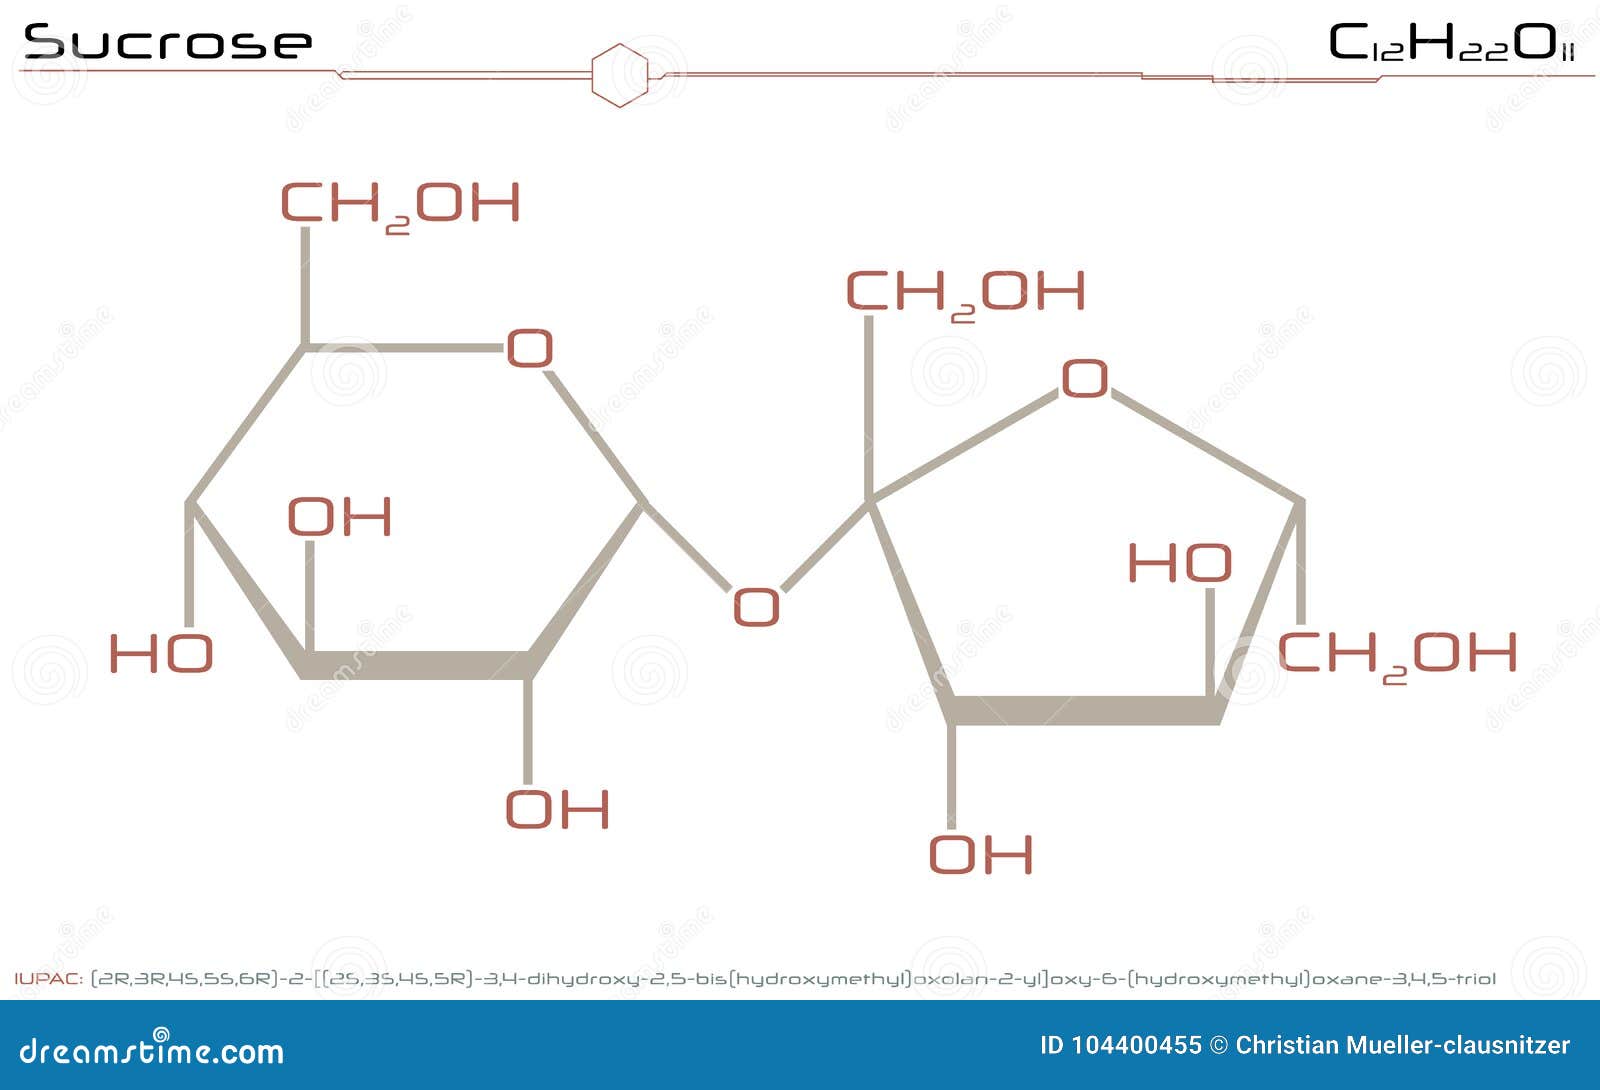 Геншин алхимический прорыв экзамен сахарозы. Молекула сахарозы. Сахароза молекула структура. Молекула сахарозы формула. Sucrose формула.